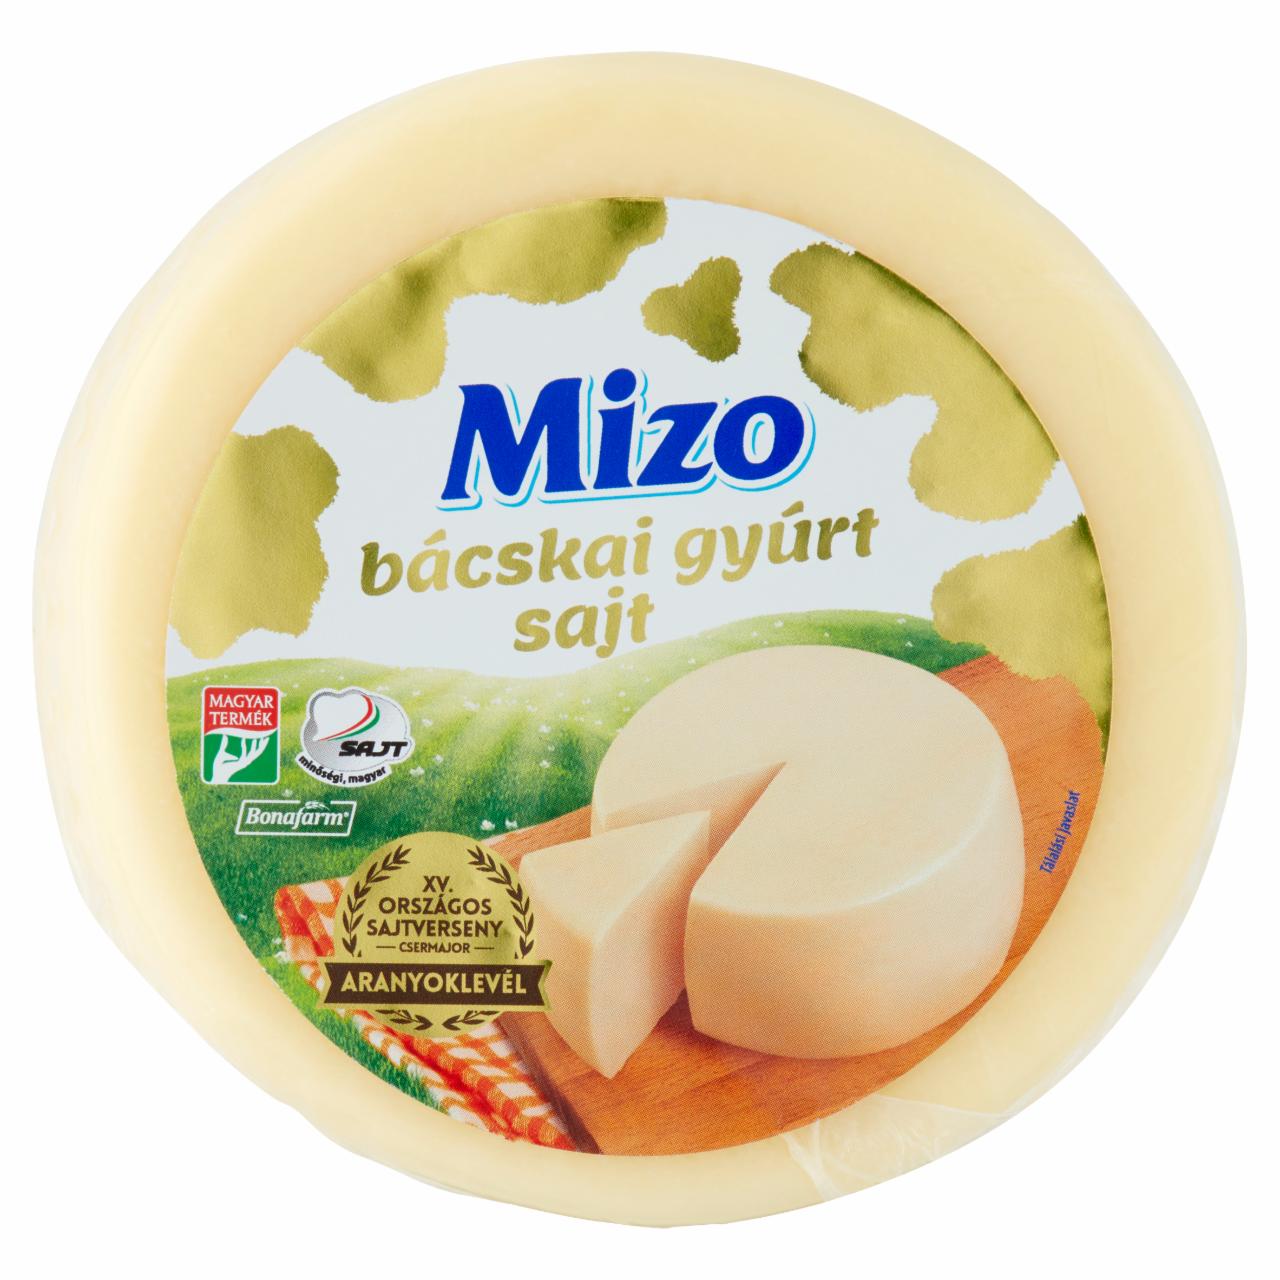 Képek - Mizo bácskai gyúrt sajt 